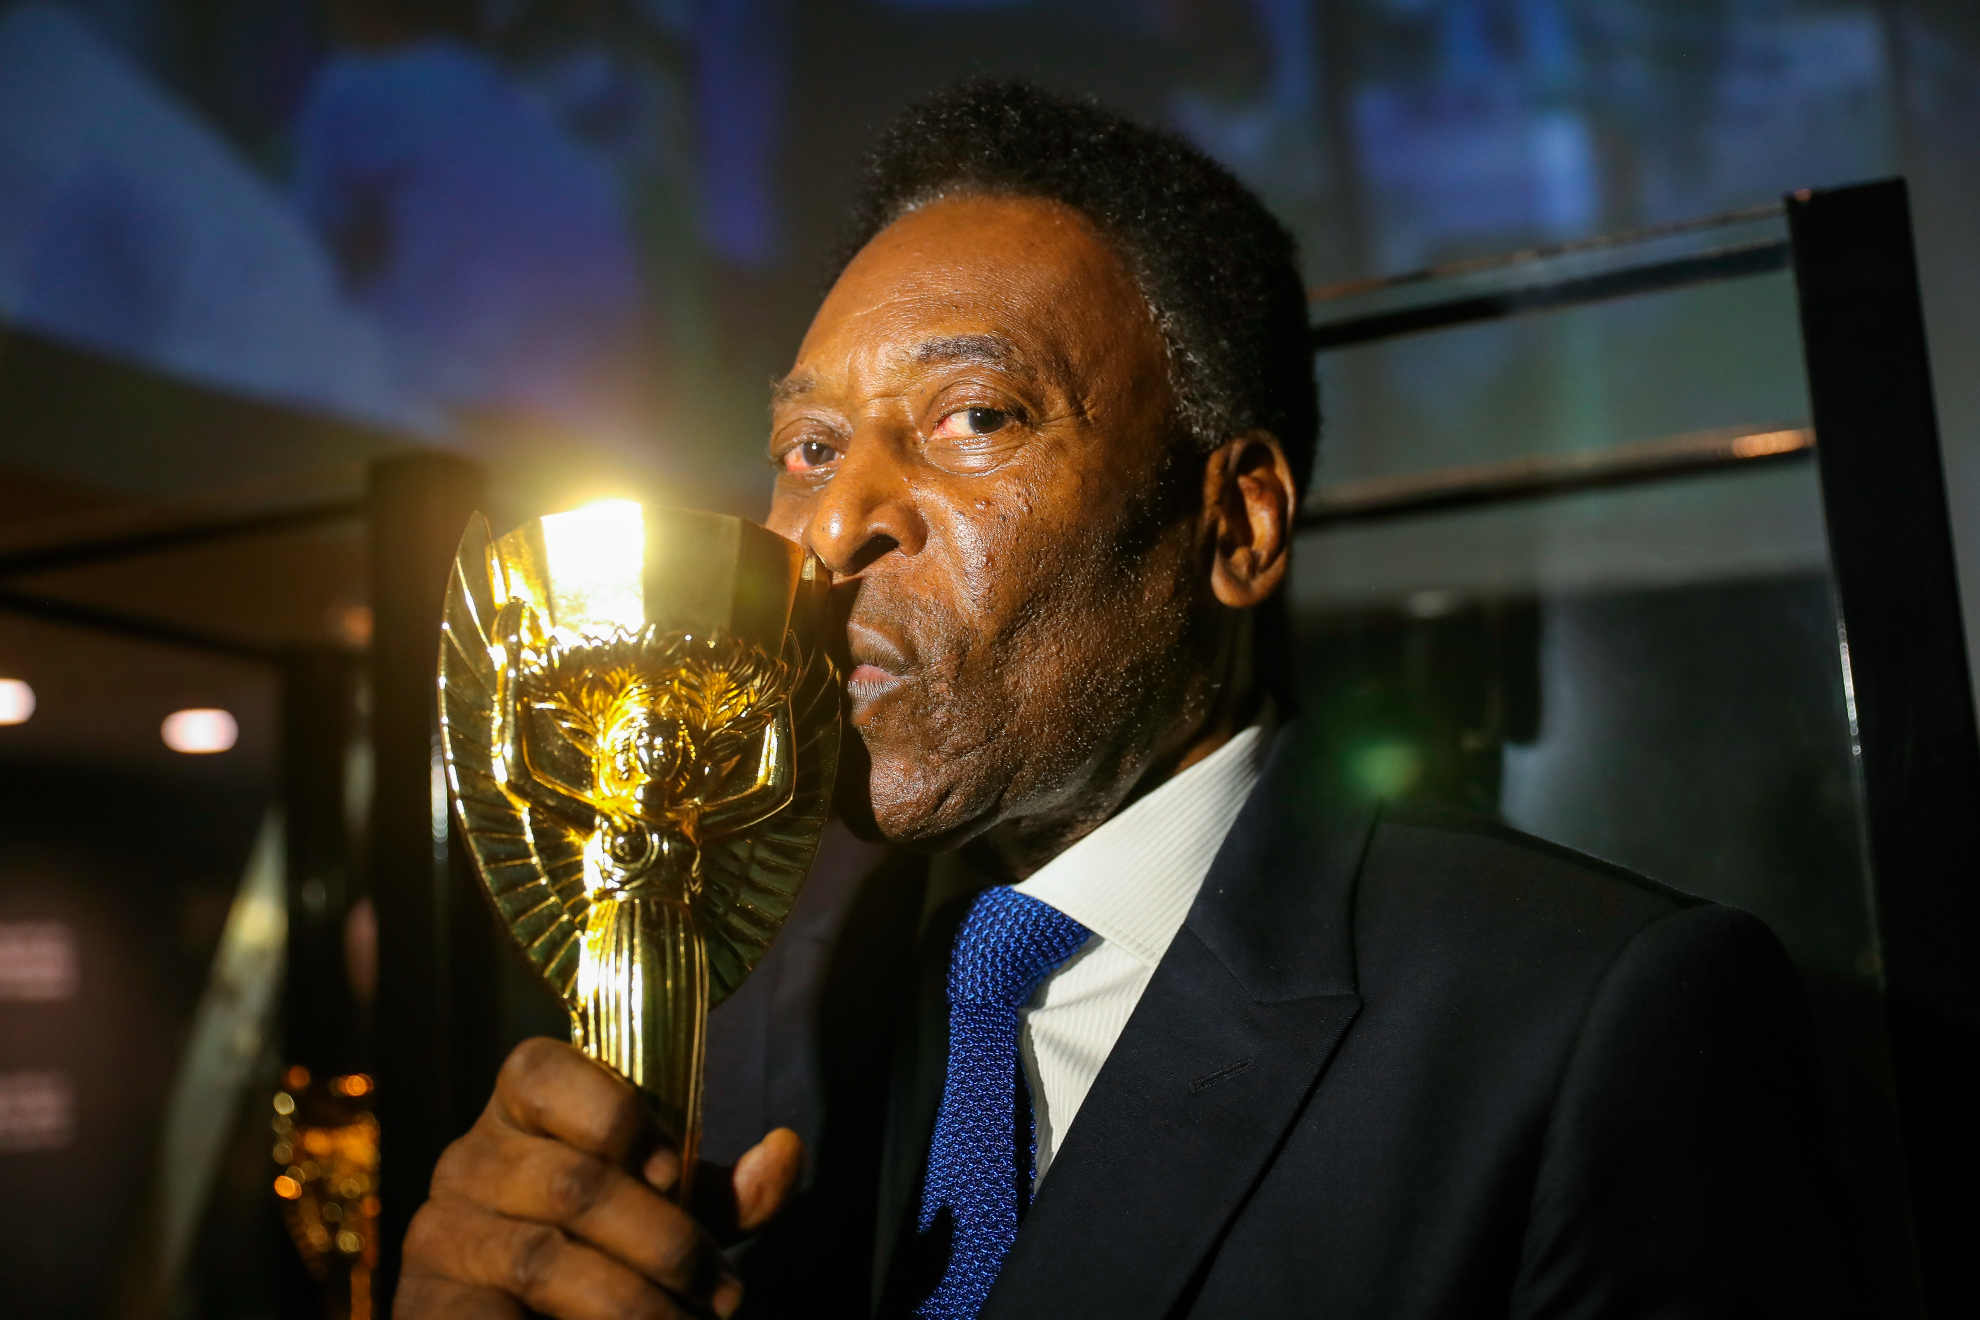 Muere Pelé | Última hora y reacciones sobre la pérdida del astro brasileño, en directo